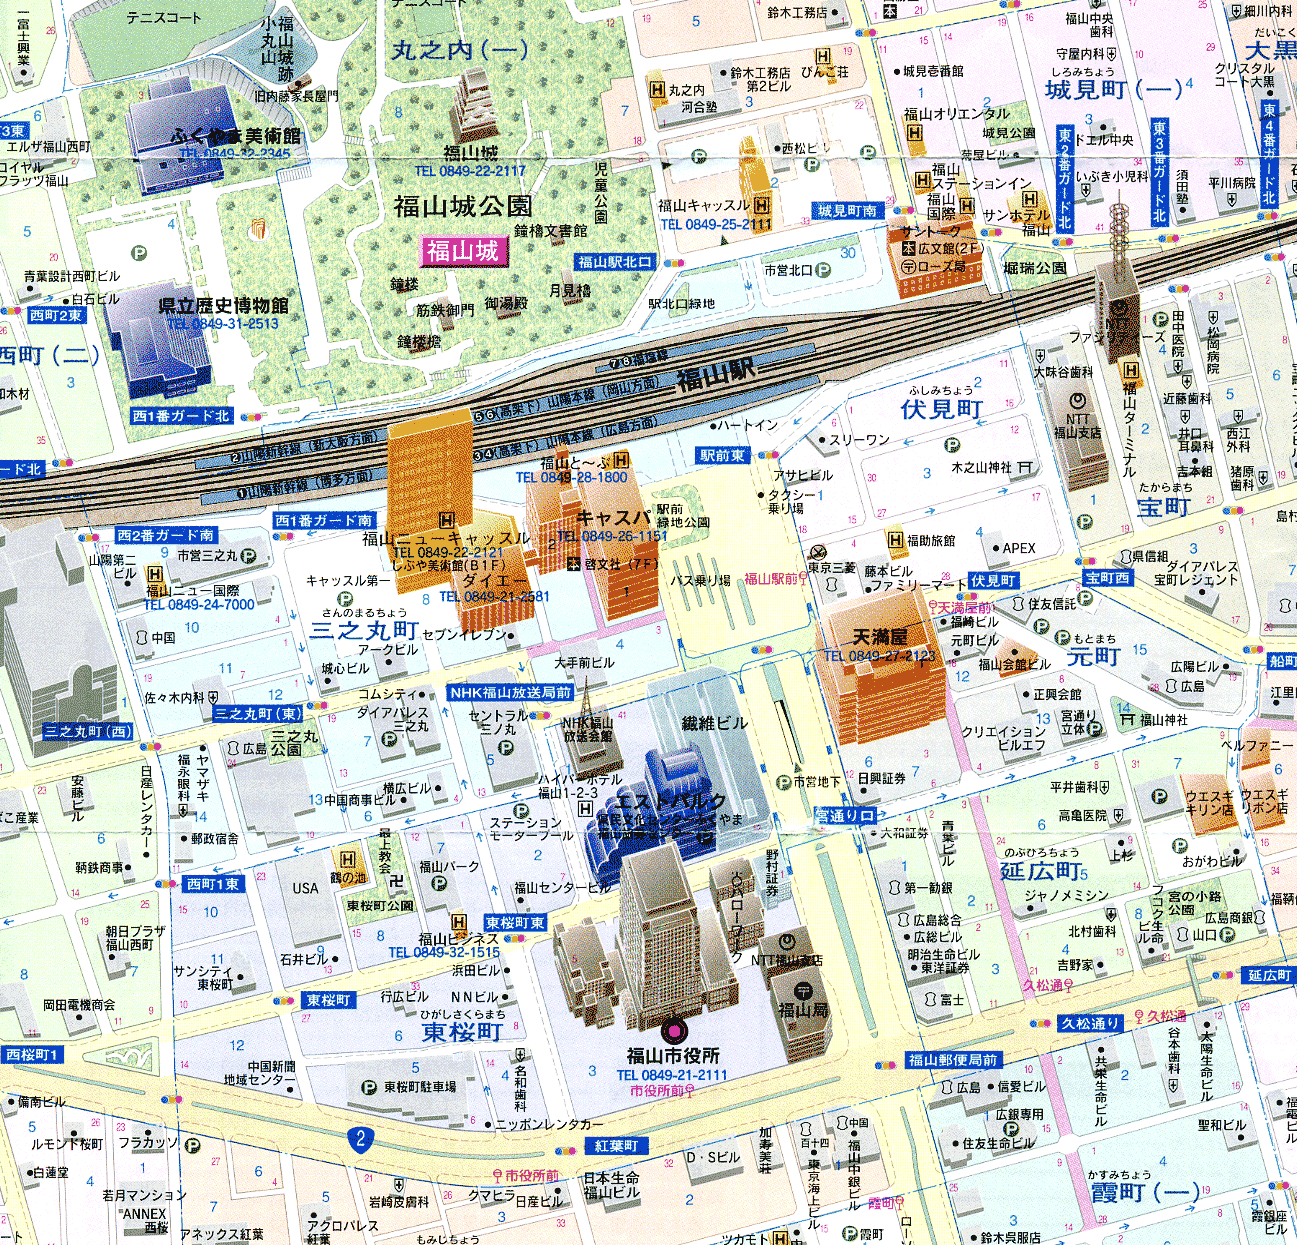 平成14年の中心部の地図